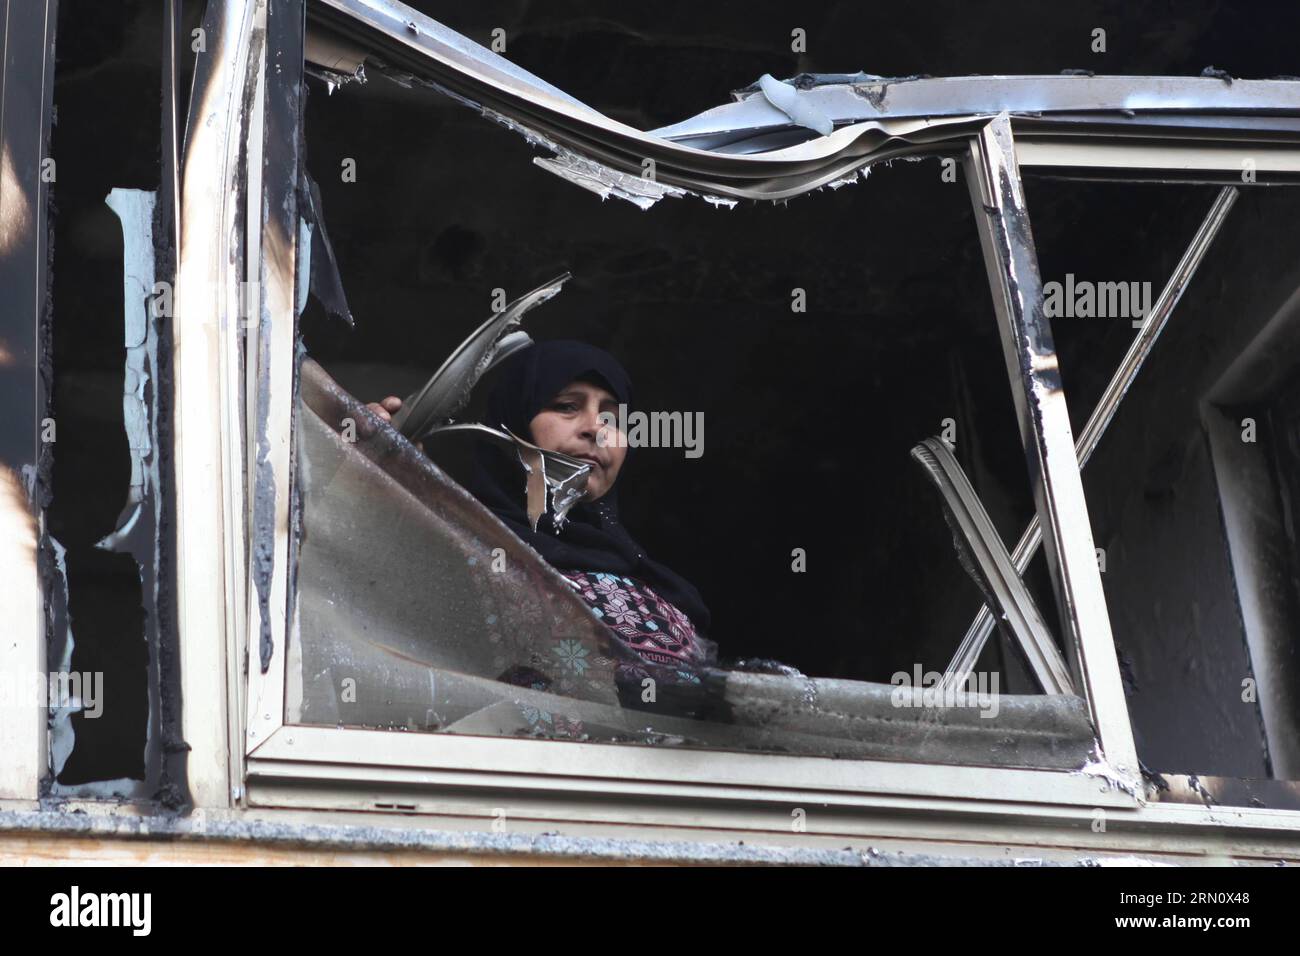 Una donna palestinese guarda da una finestra della casa del suo parente che è stata attaccata da bombe a benzina nel villaggio di Khirbat Abu Falah, a nord-est di Ramallah, il 23 novembre 2014. I coloni ebrei presumibilmente incendiano una casa di famiglia palestinese nella Cisgiordania occupata durante la notte, in un sospetto crimine d'odio in mezzo alla tensione crescente tra israeliani e palestinesi. Fadi Arouri) MIDEAST-RAMALLAH-INCENDIATO CASA EmadxDrimly PUBLICATIONxNOTxINxCHN una donna PALESTINESE guarda da una finestra della casa del suo parente che cosa ha attaccato dalle bombe a benzina nel villaggio di Abu Falah a nord-est di Ramallah IL 2 novembre Foto Stock